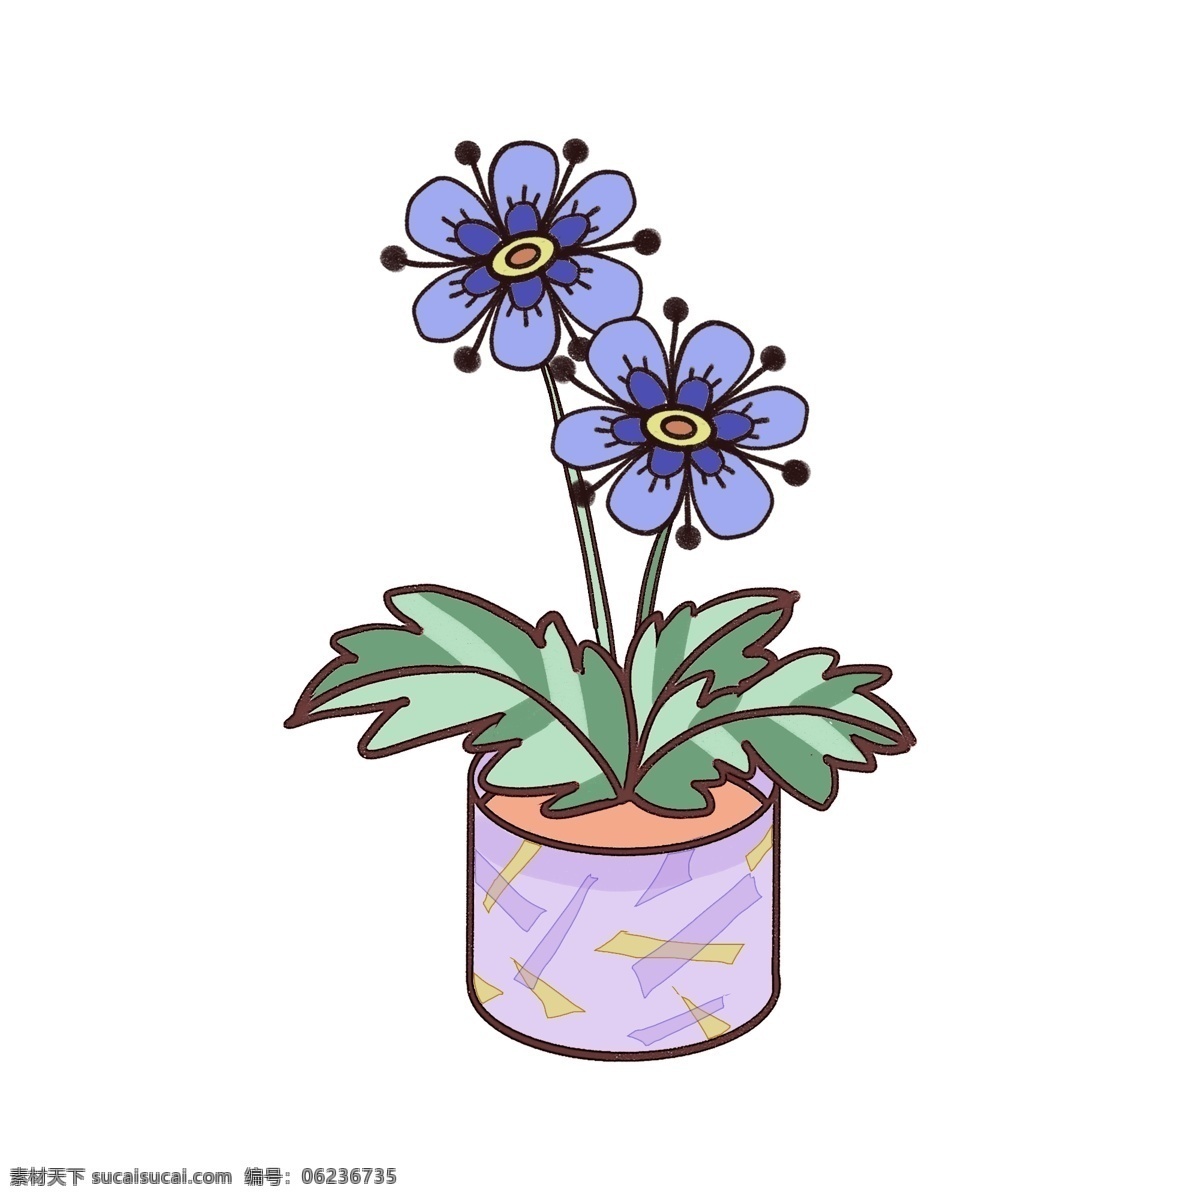 掌 形 叶 花卉 盆栽 蓝紫花朵 植物 绿植 绿野 掌形叶